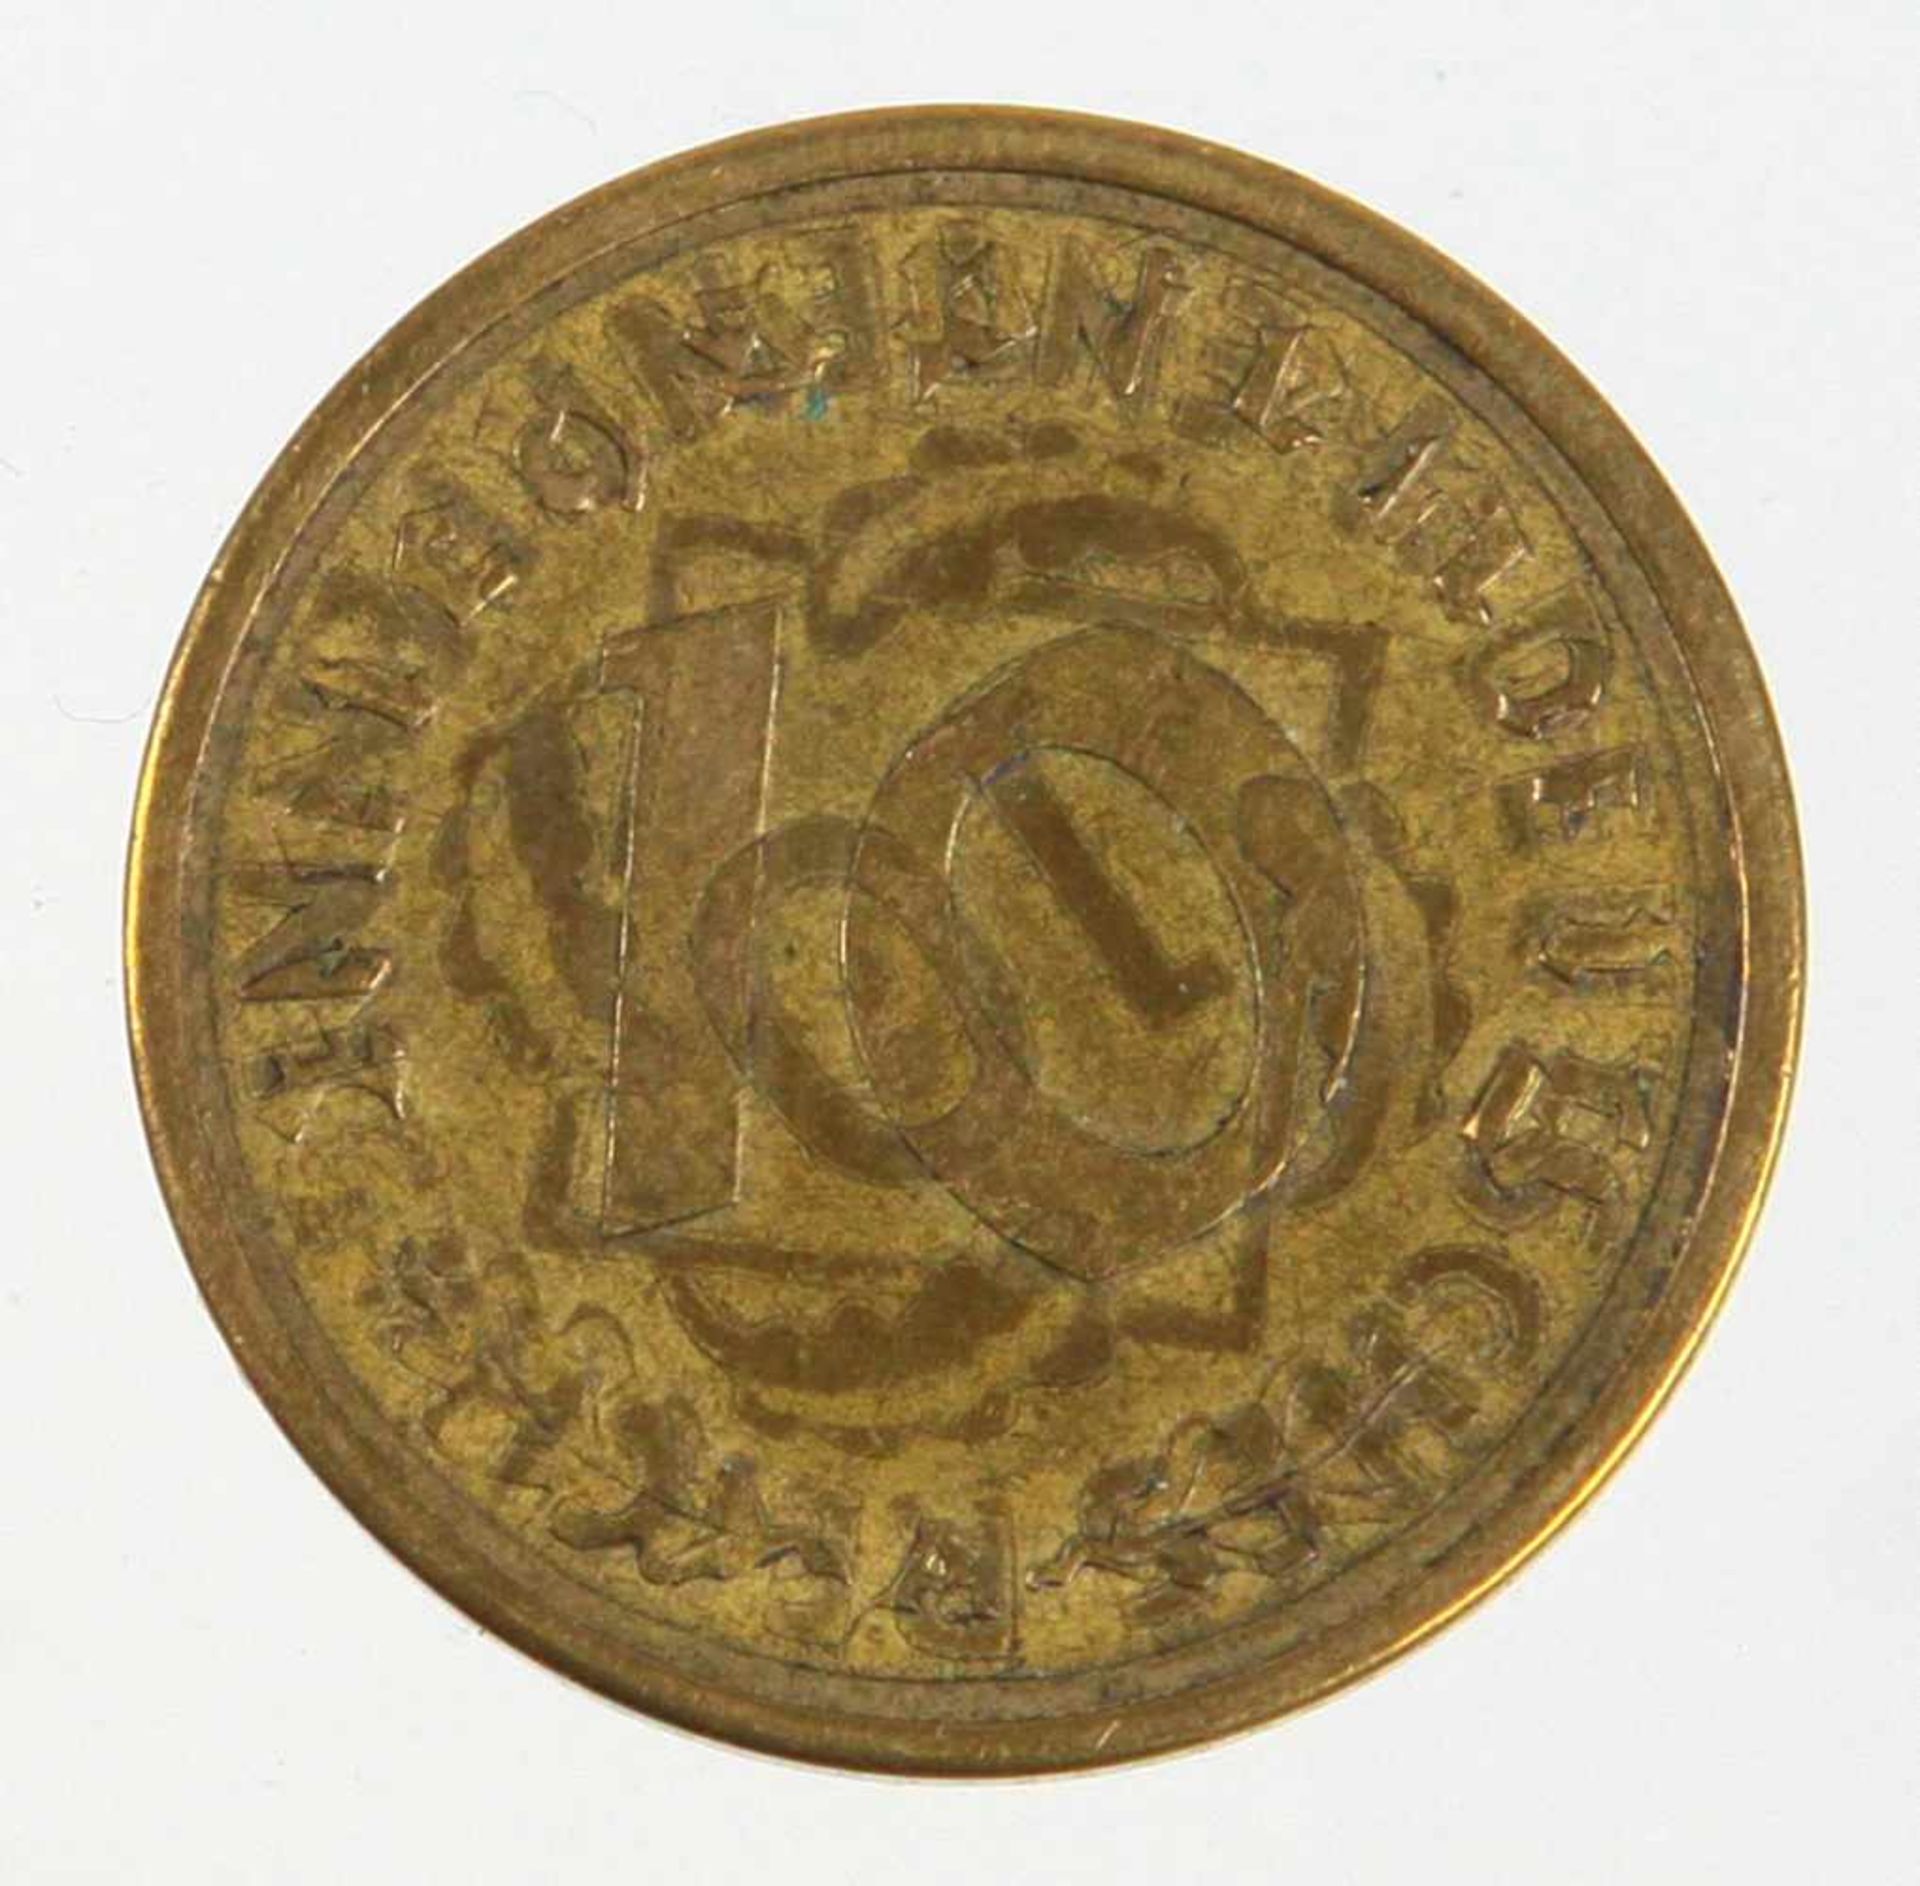 Fehlprägung 10 Pfennig 194010 Reichspfennig von 1940 Prägestätte A, Wertangabe mit Fehlprägung, §